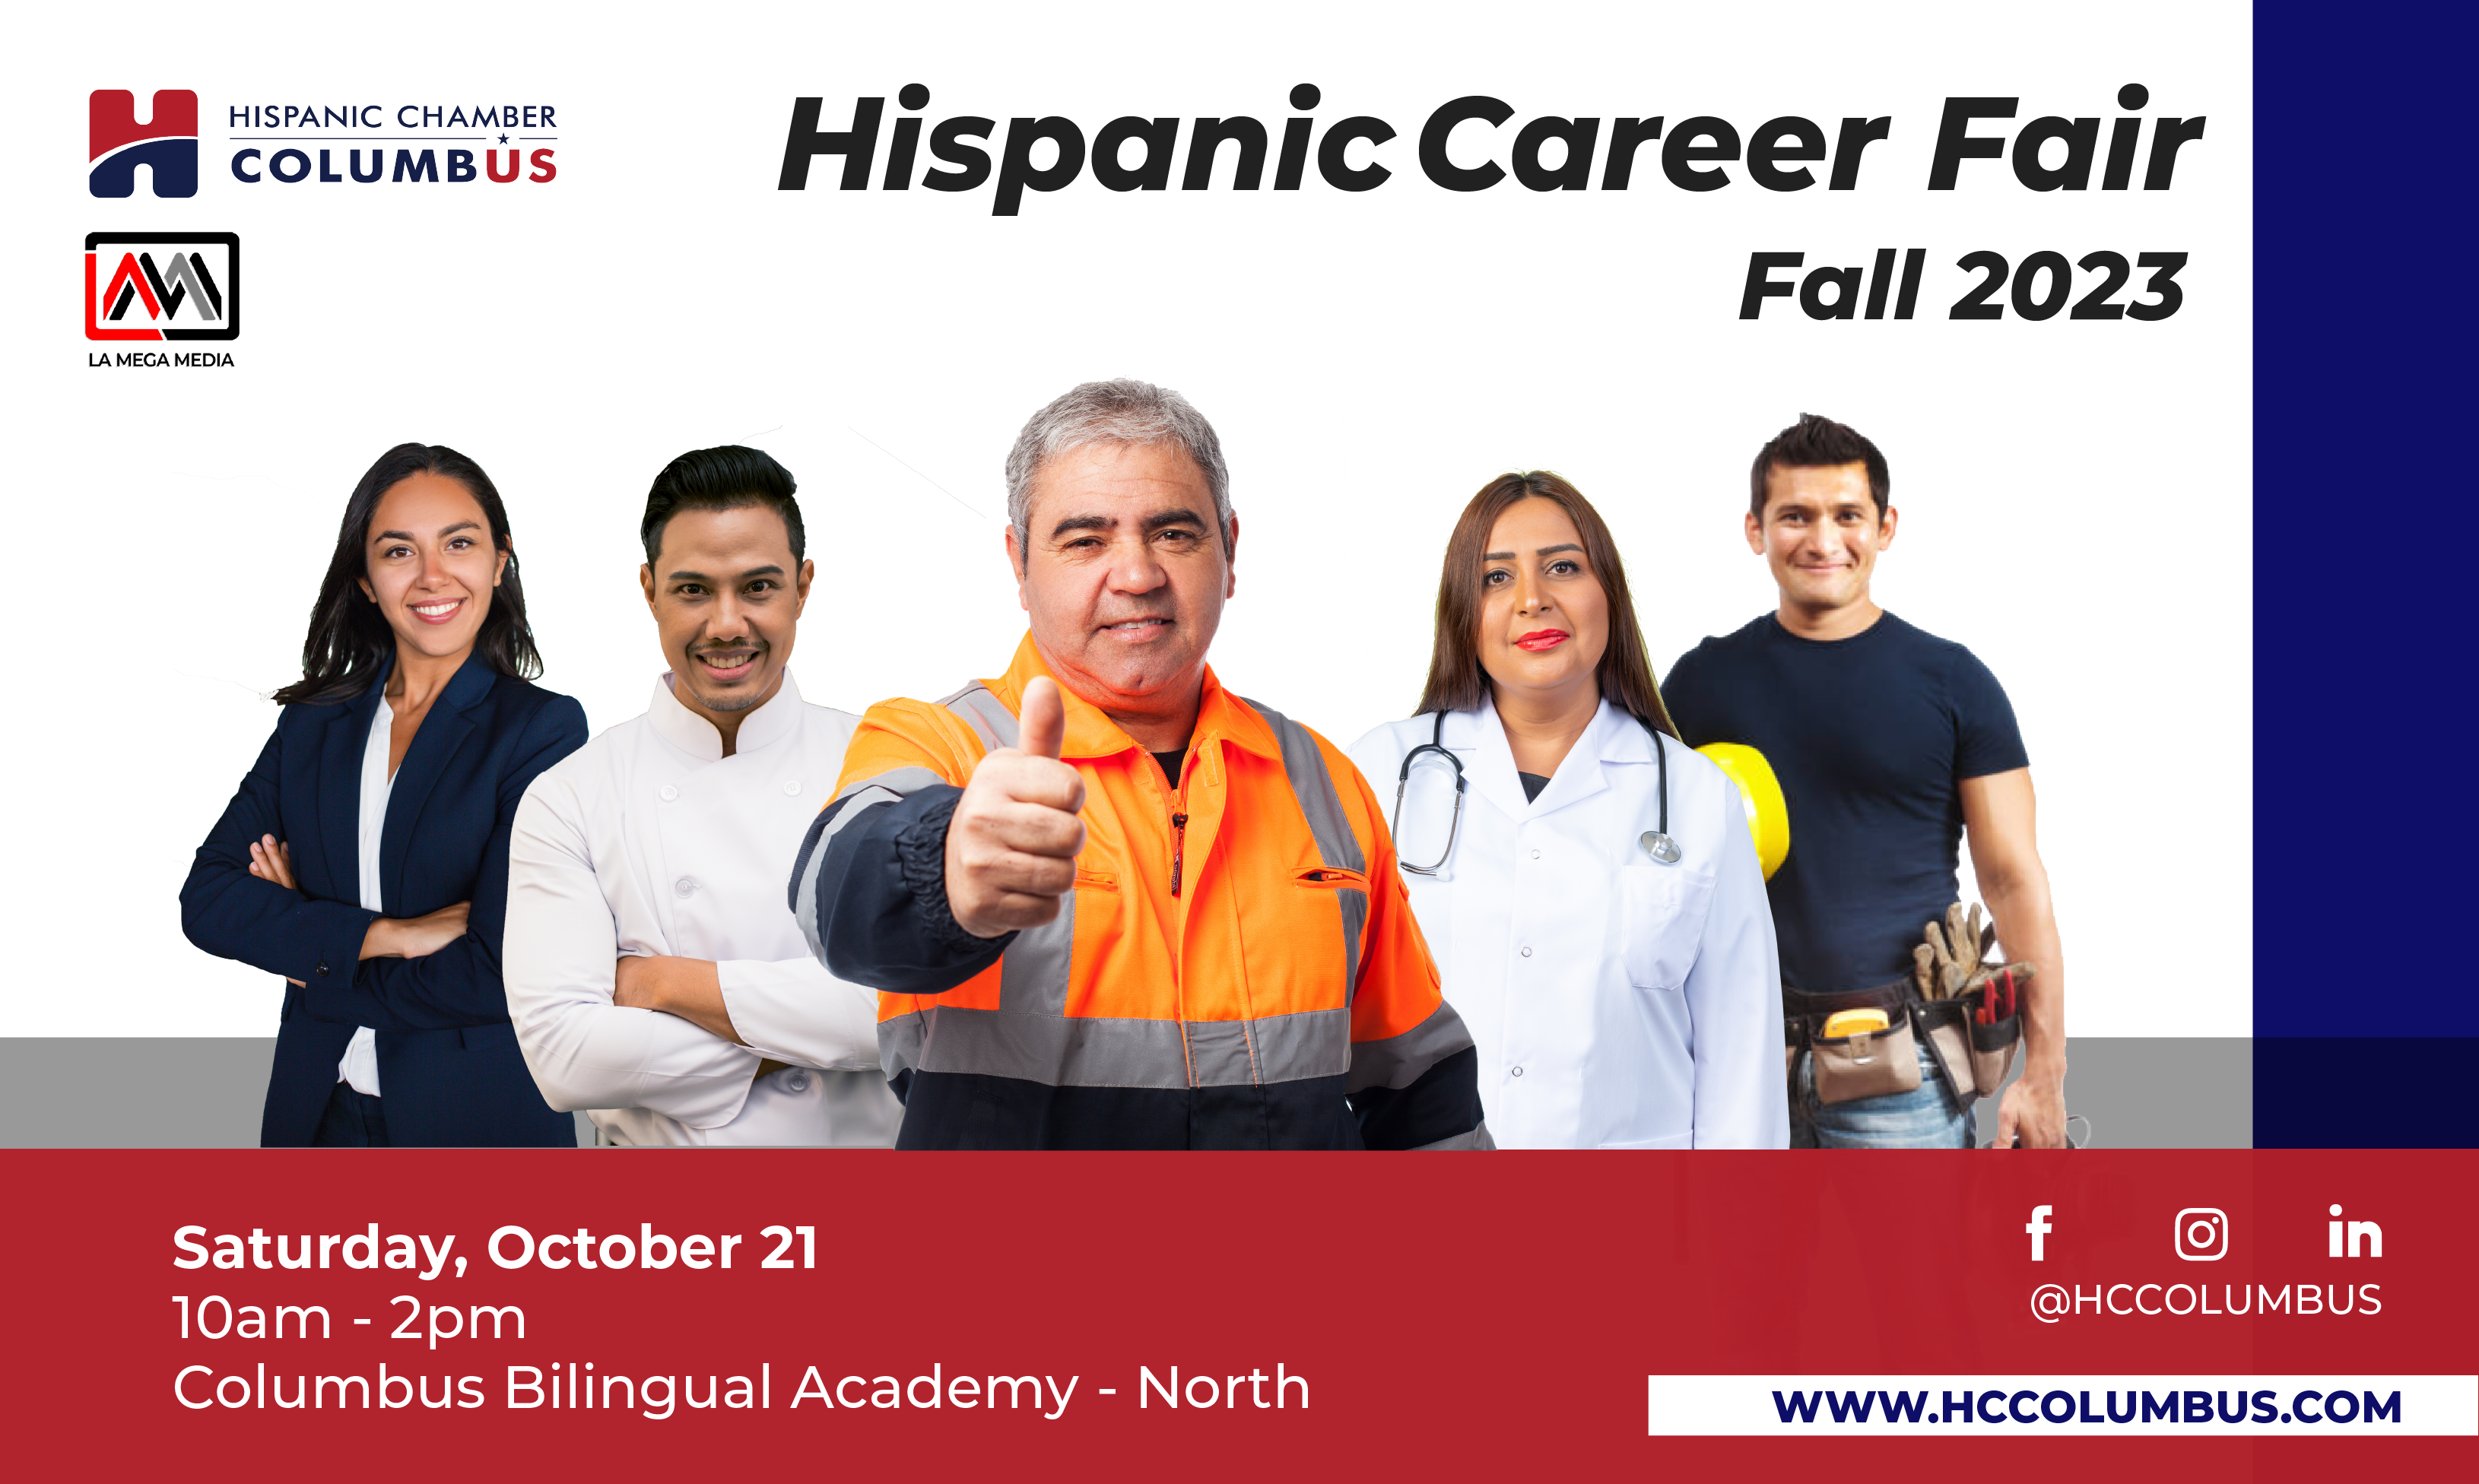 Hispanic Career Fair Fall 2023